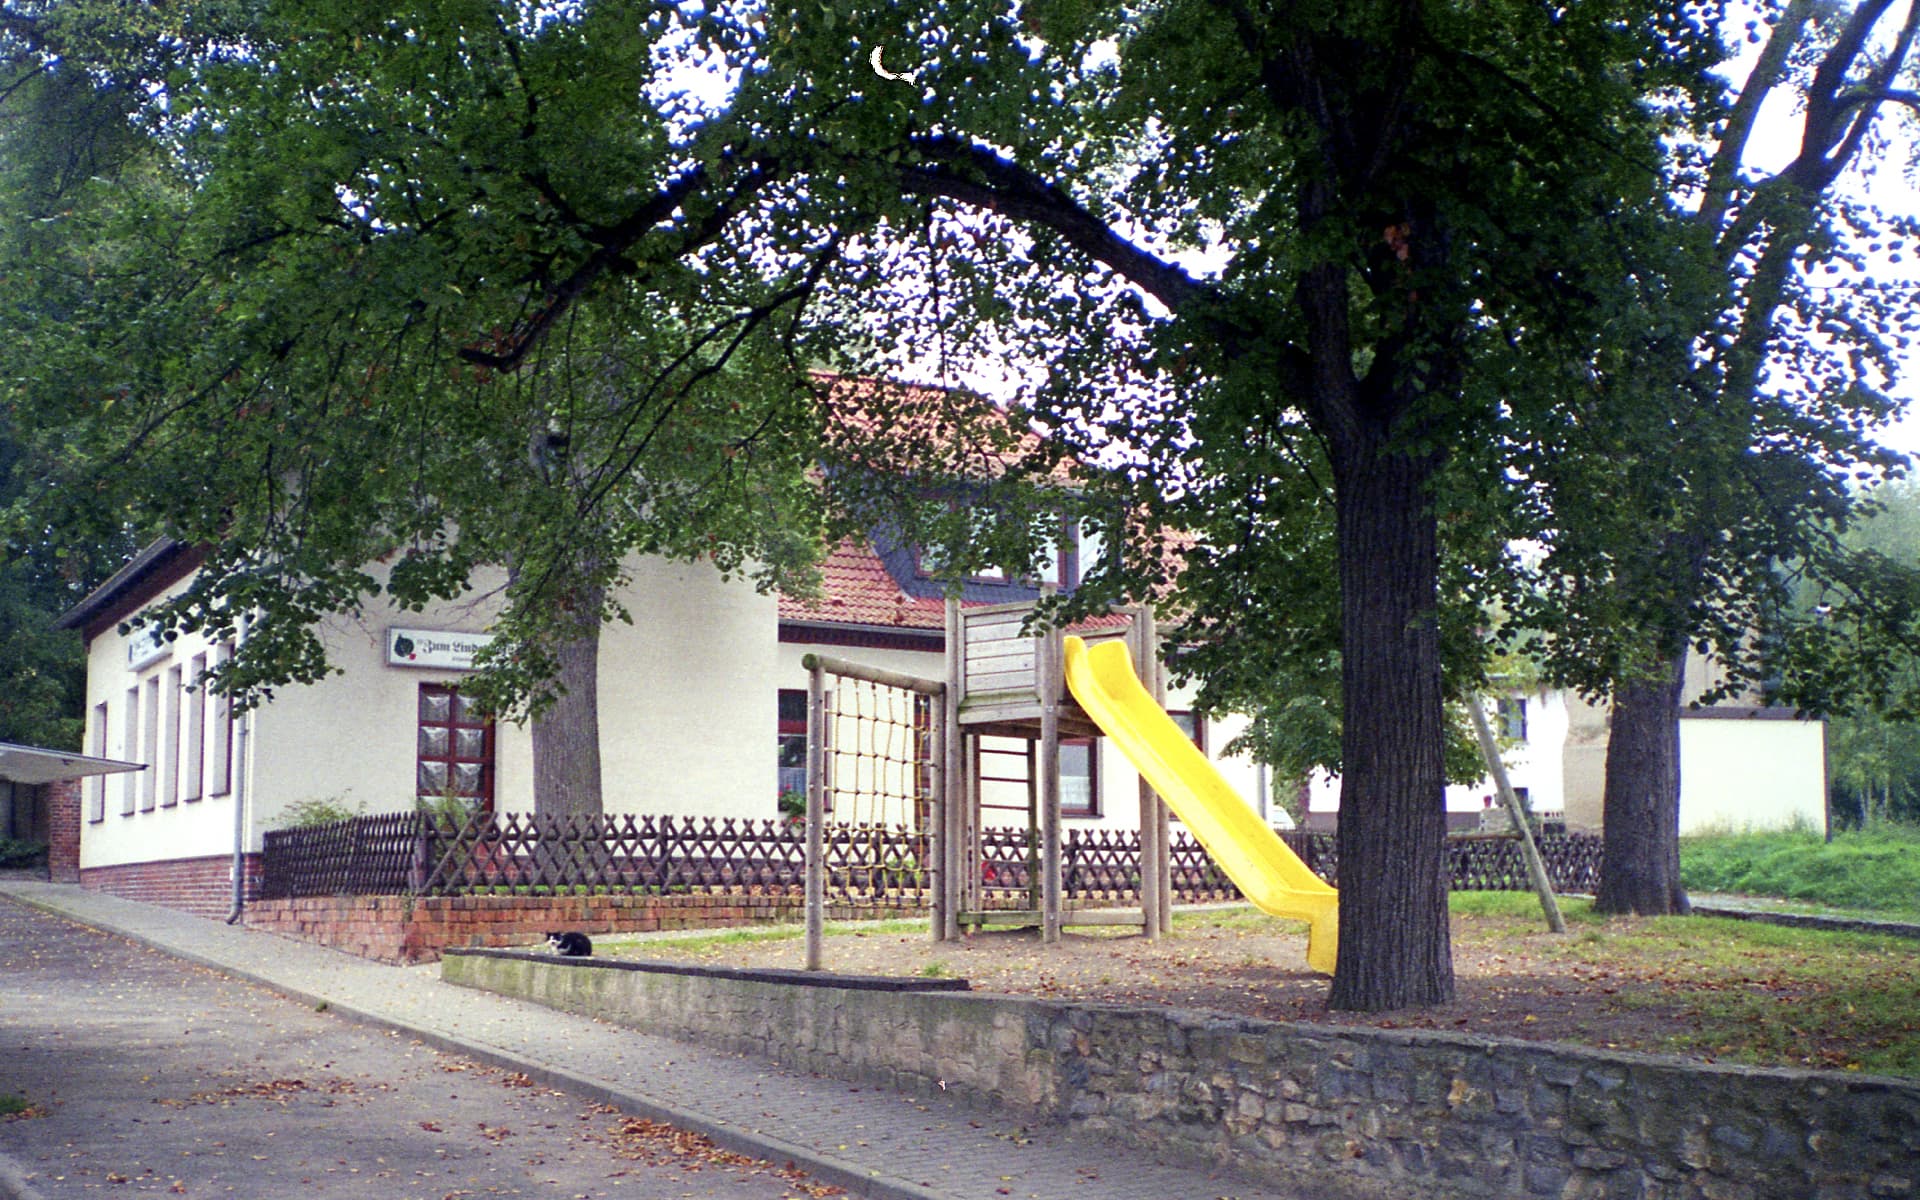 1997 - Nursing home "Zum Lindenhof"